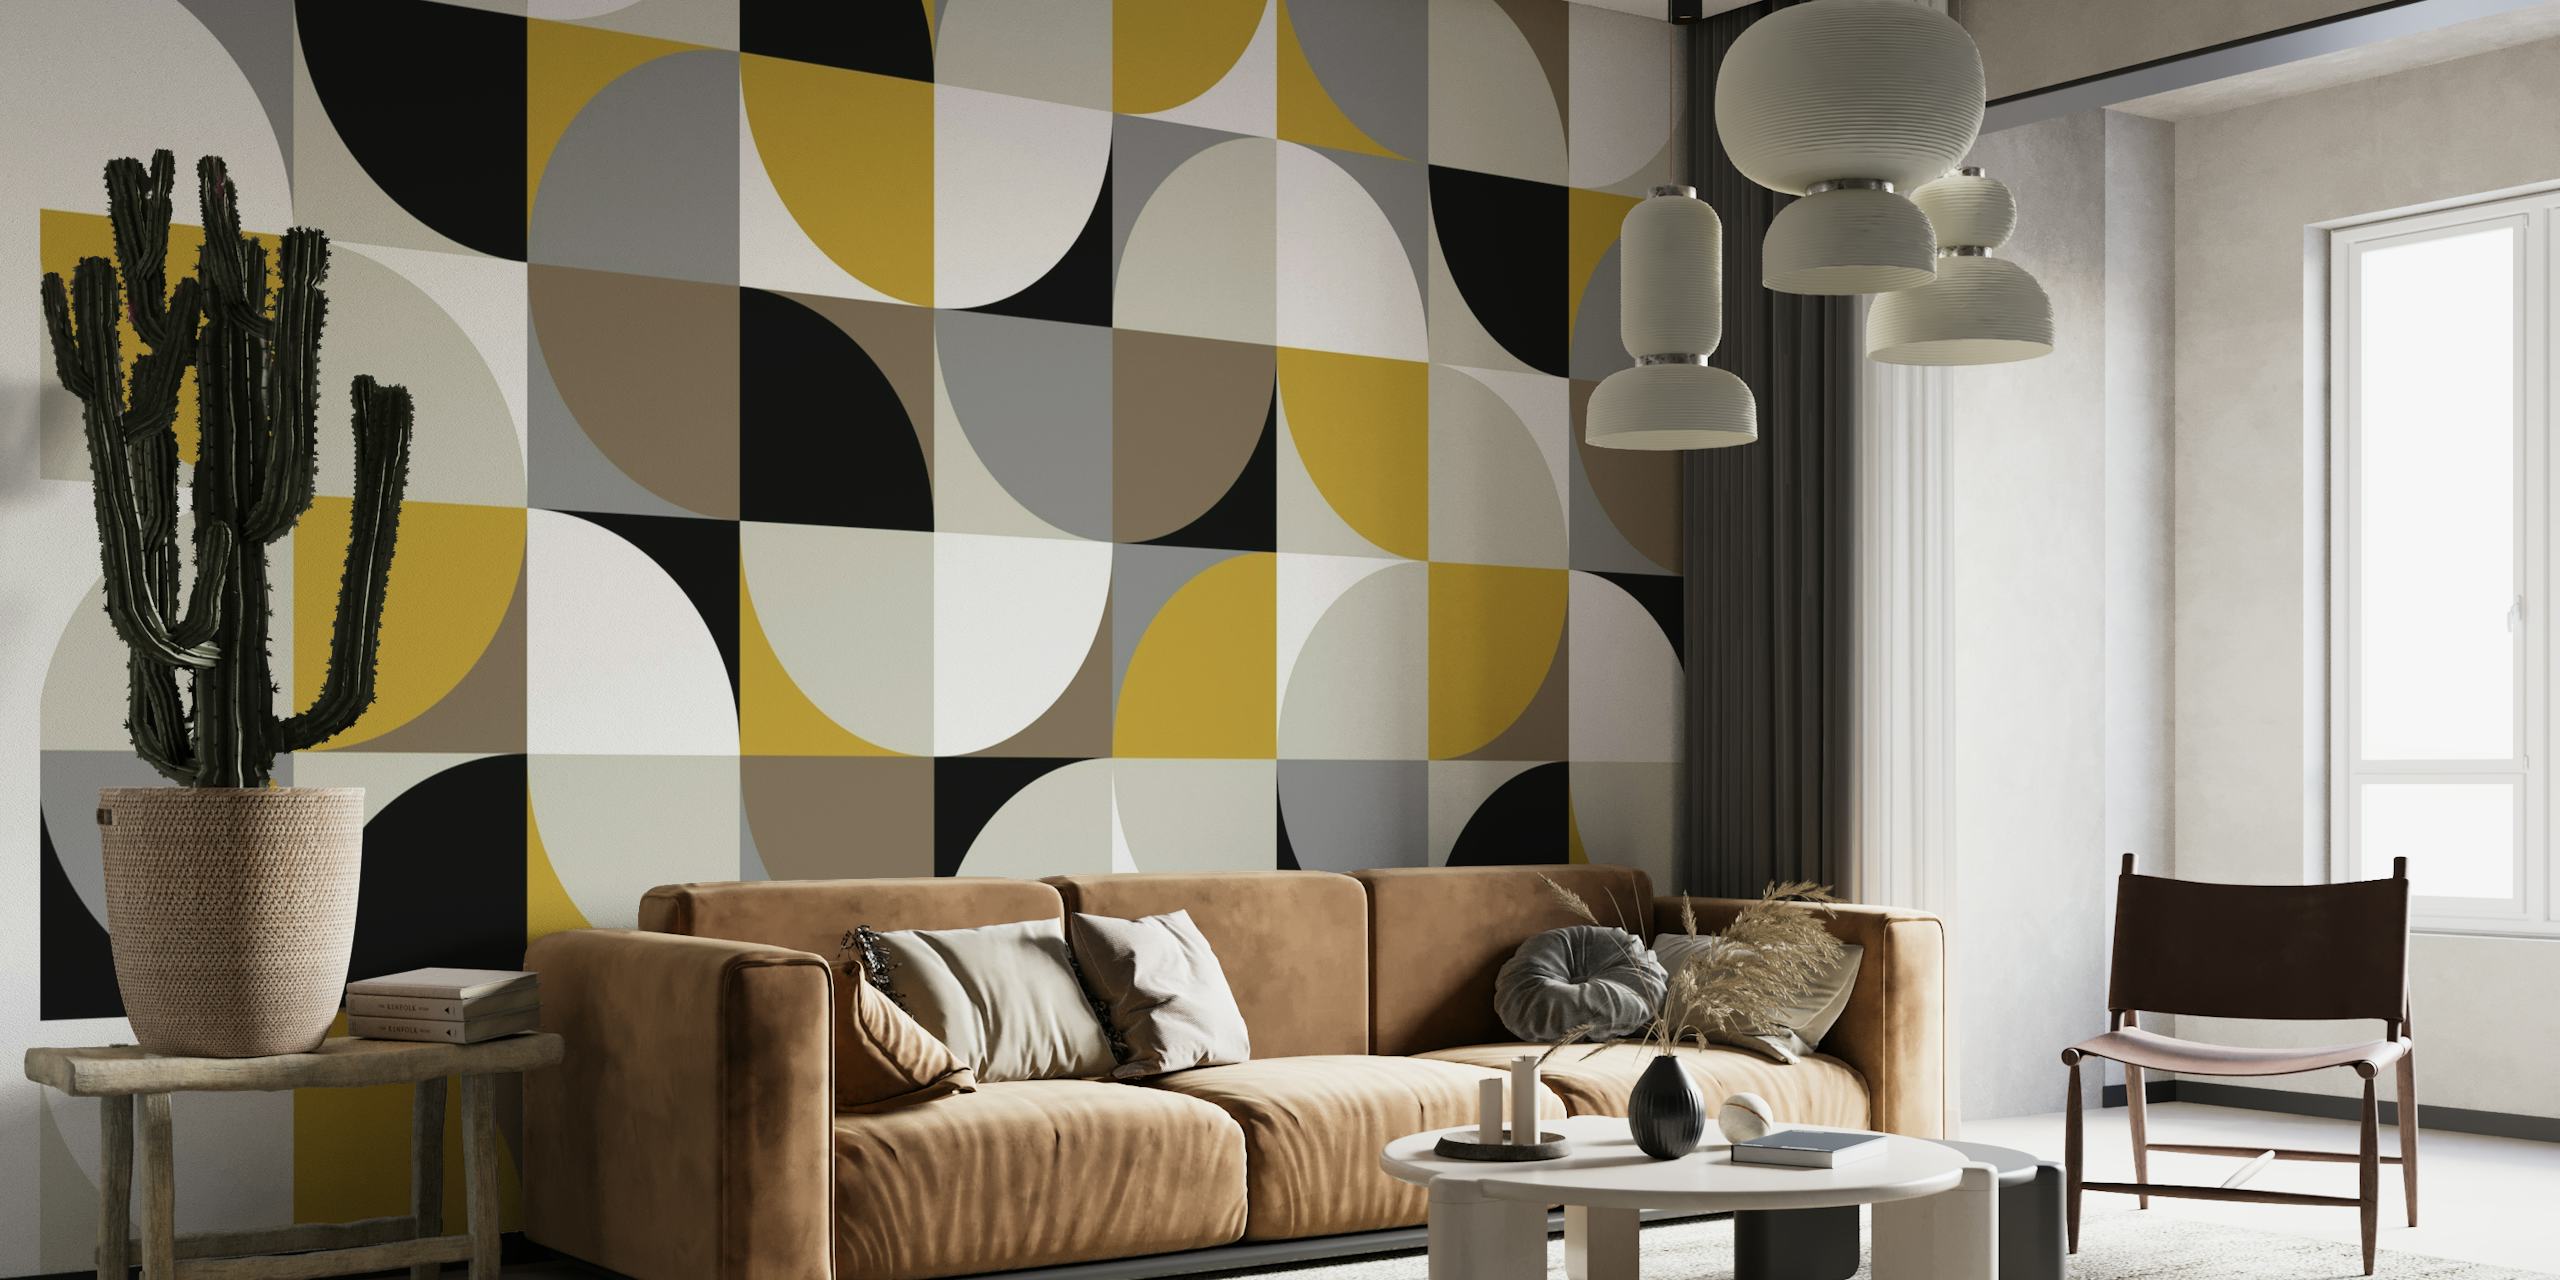 Retro mod vierkantenontwerp in zwart, wit, grijs en goud voor een muurschildering